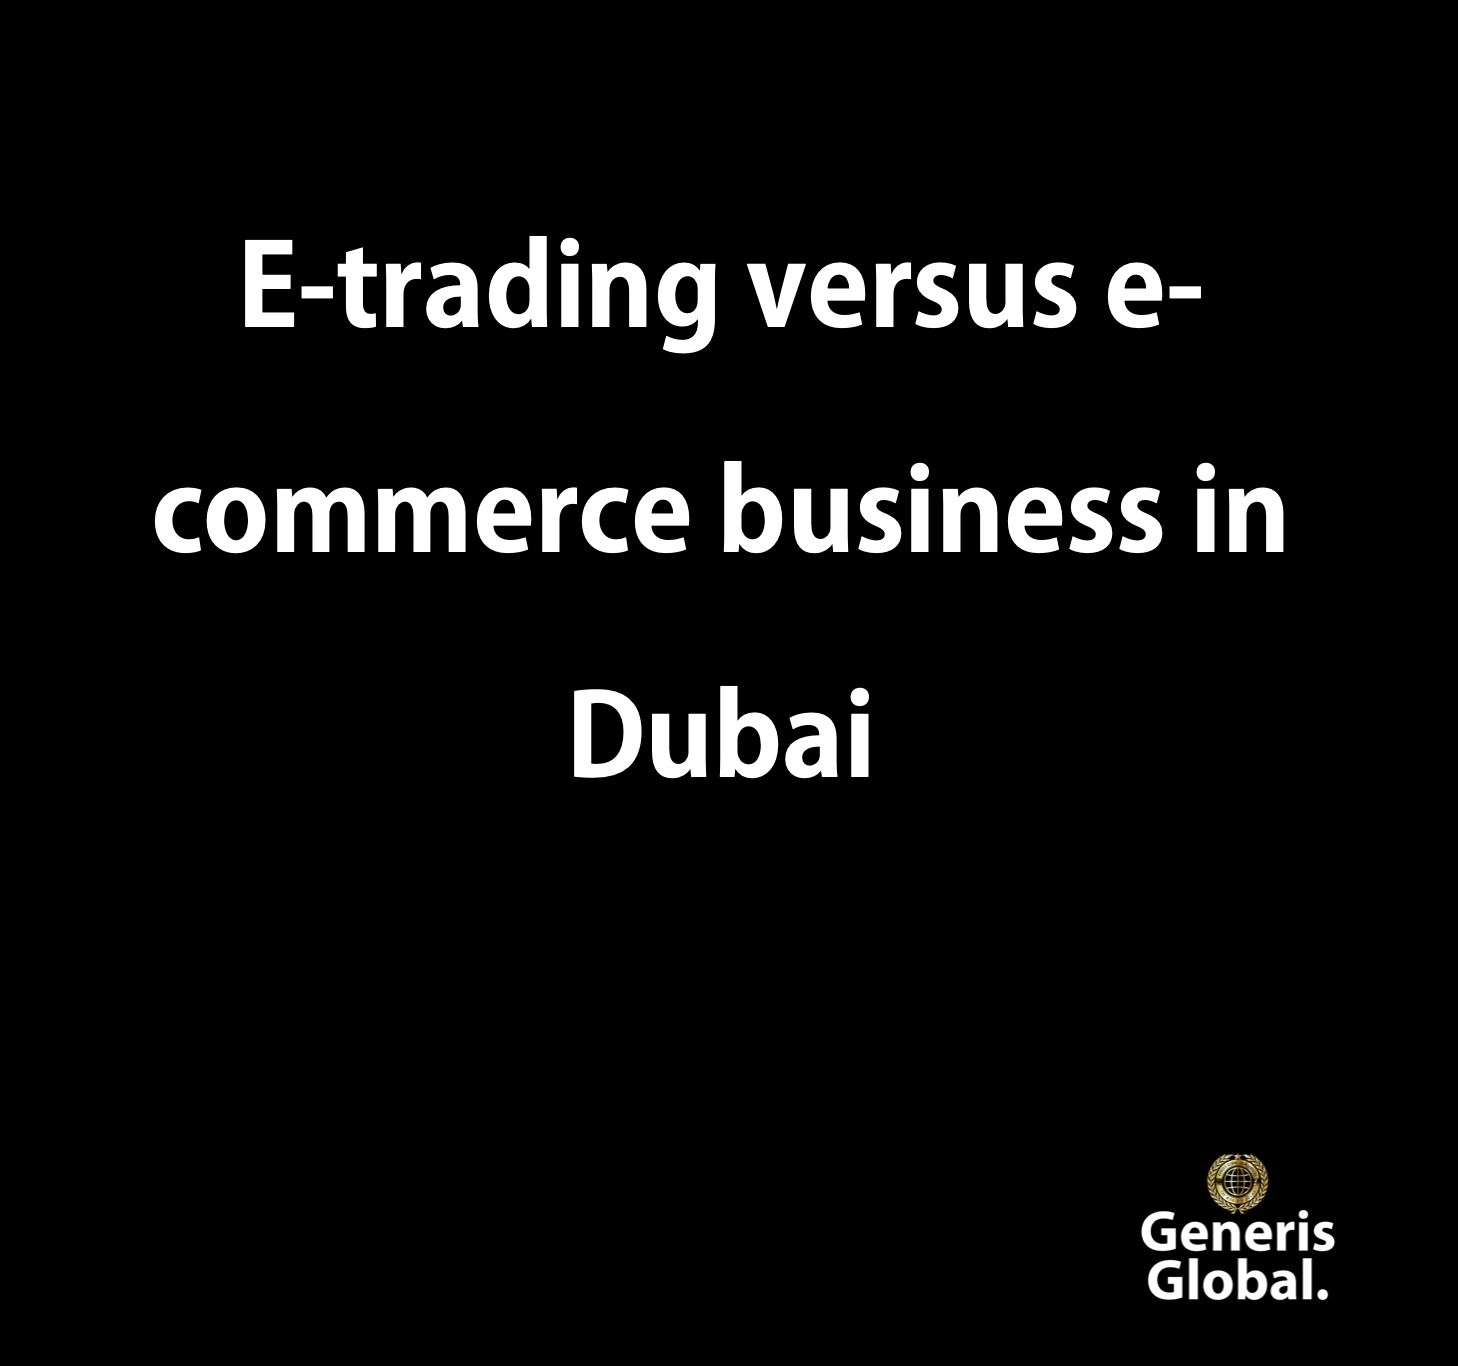 E-trading versus e-commerce business in Dubai